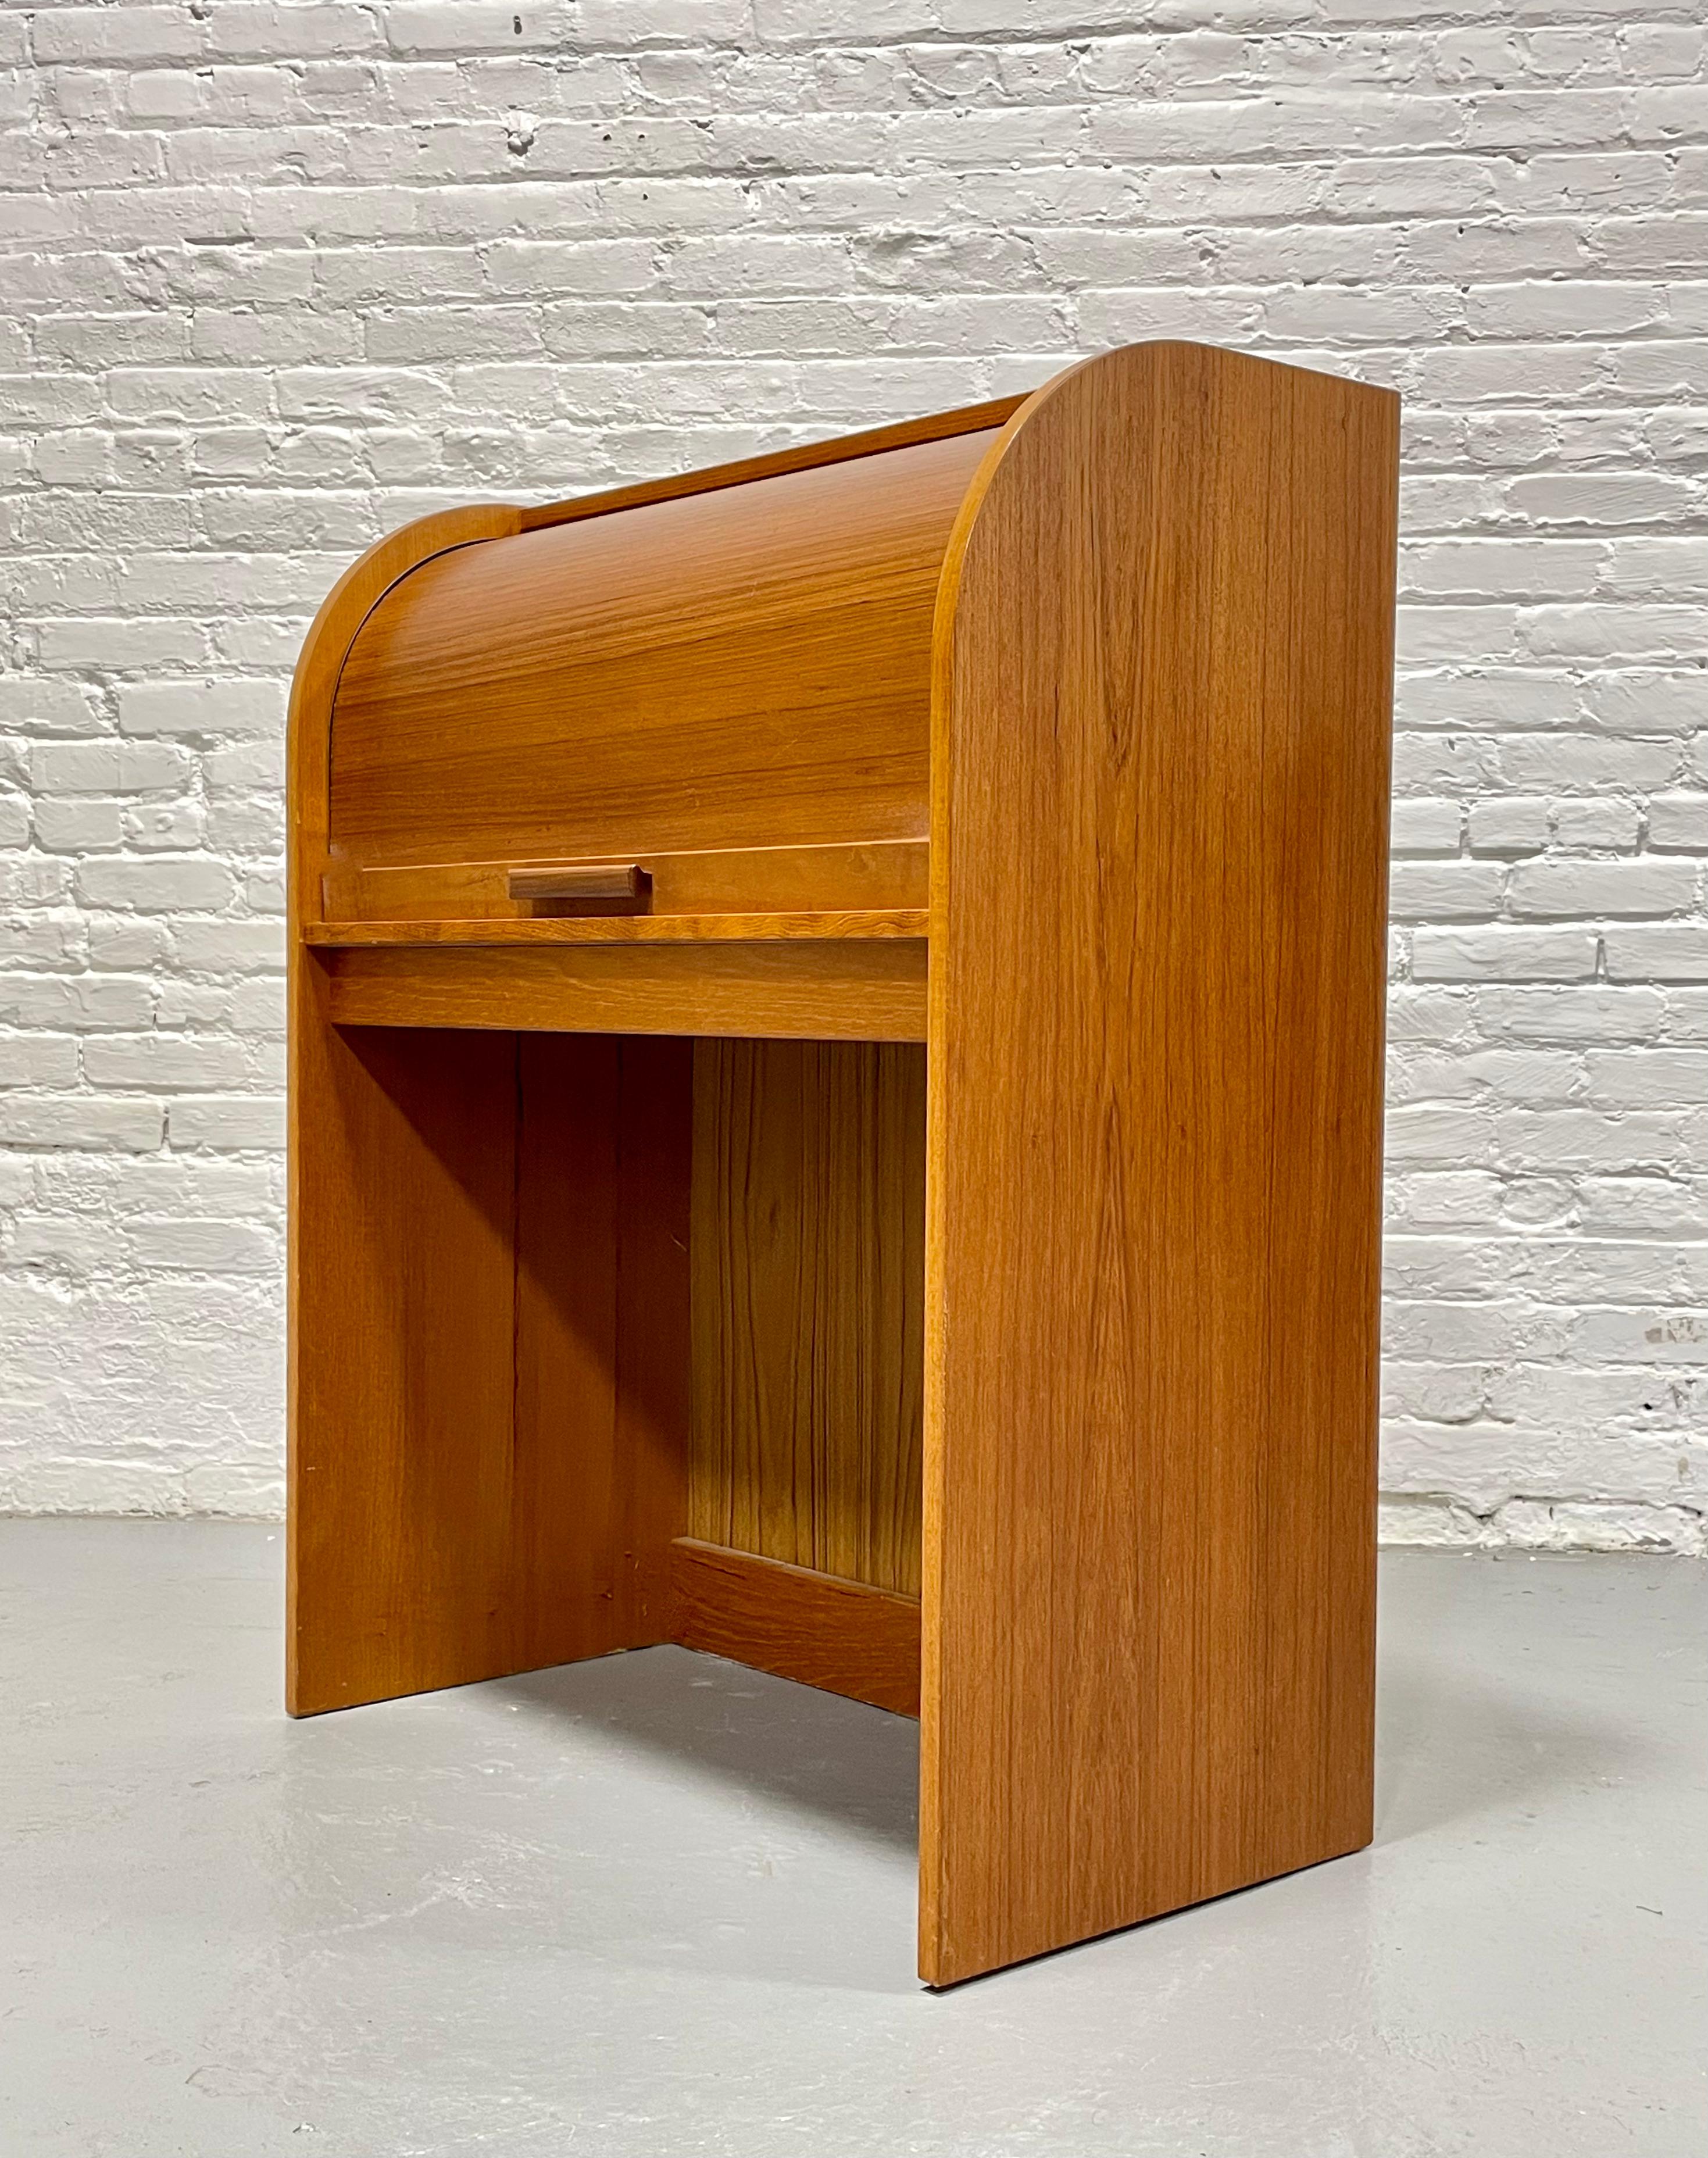 Bureau secrétaire danois en teck de style moderne du milieu du siècle, C.I.C., 1960. Un profil incroyable avec un plateau de table escamotable caché et un espace ouvert en dessous pour votre chaise. Installez-vous confortablement et travaillez sur